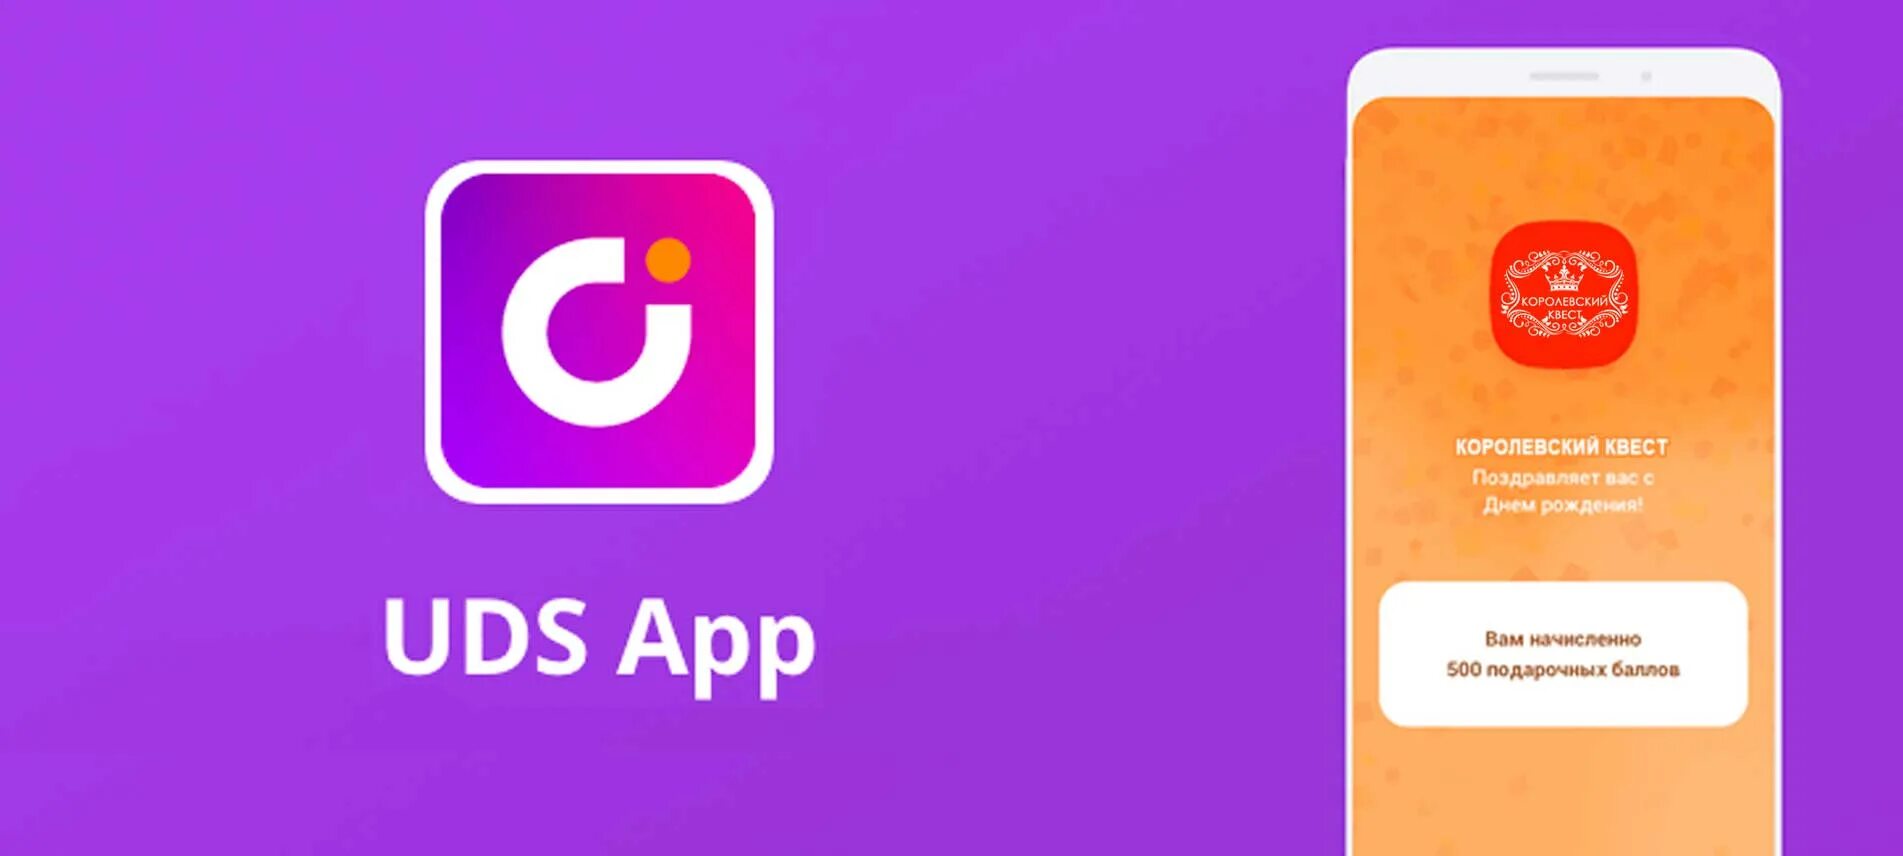 UDS. UDS логотип. ЮДС приложение. Мобильное приложение UDS.